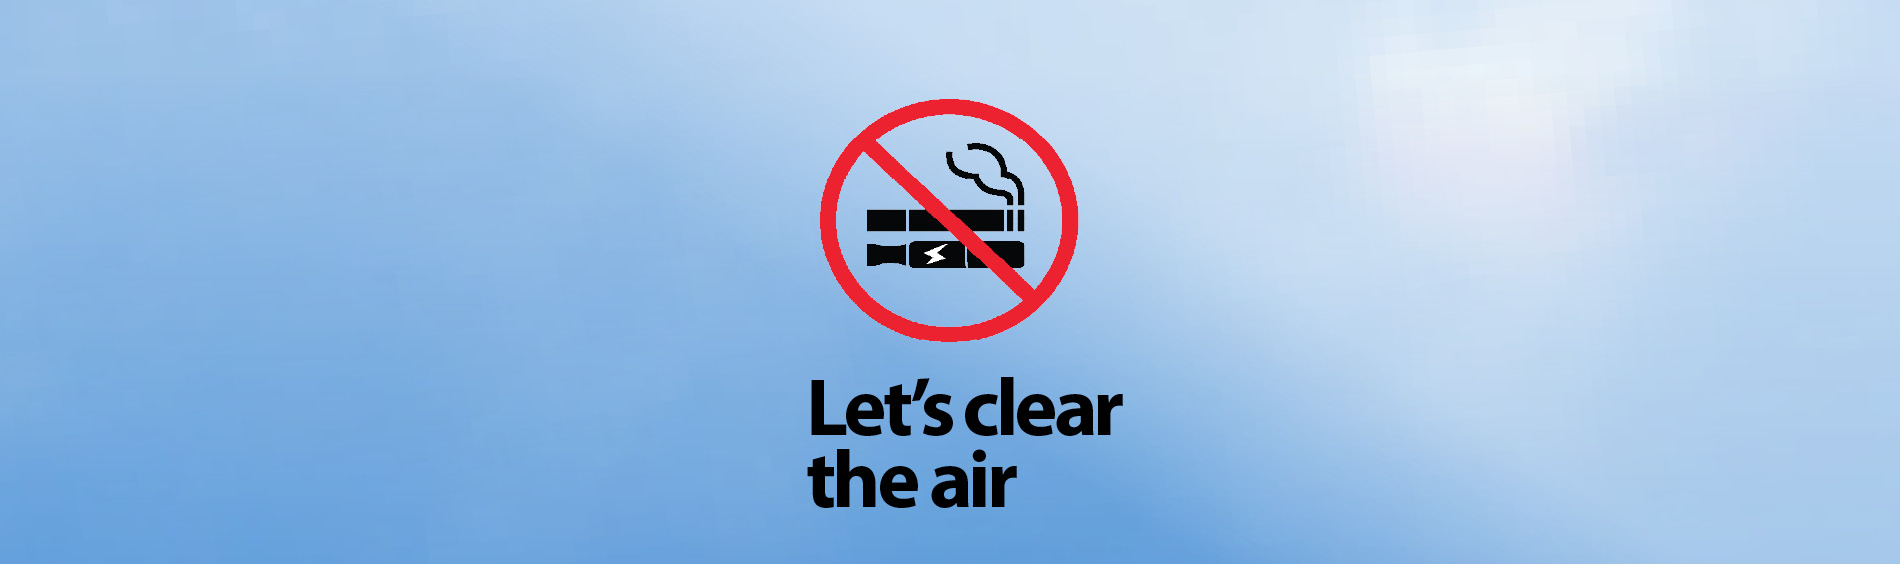 Lets Clear the air no smoking no vaping